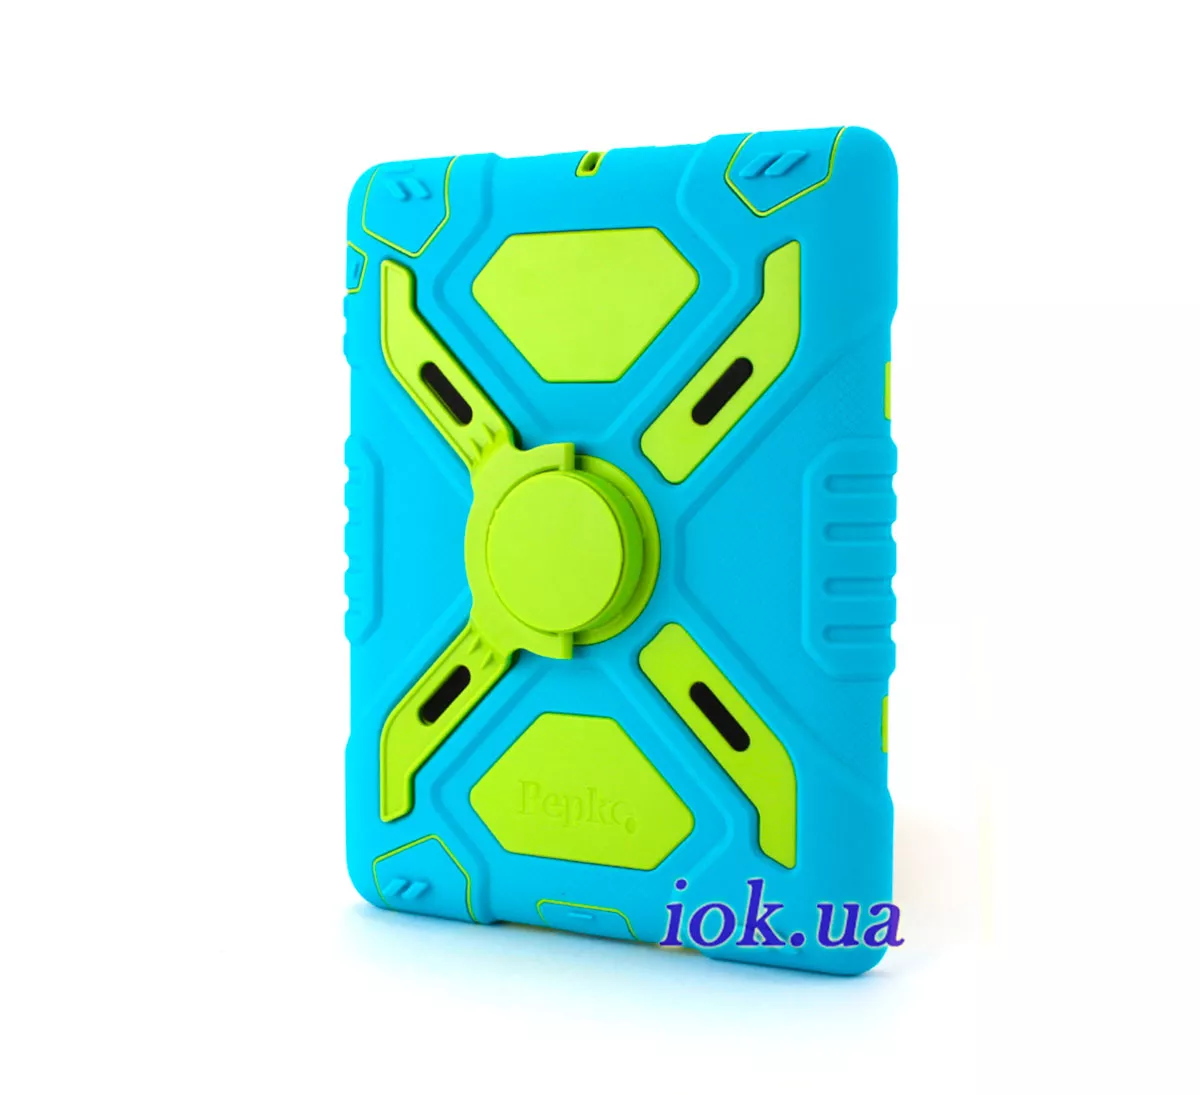 Защитный чехол для iPad 2/3/4 - Pepkoo, голубой